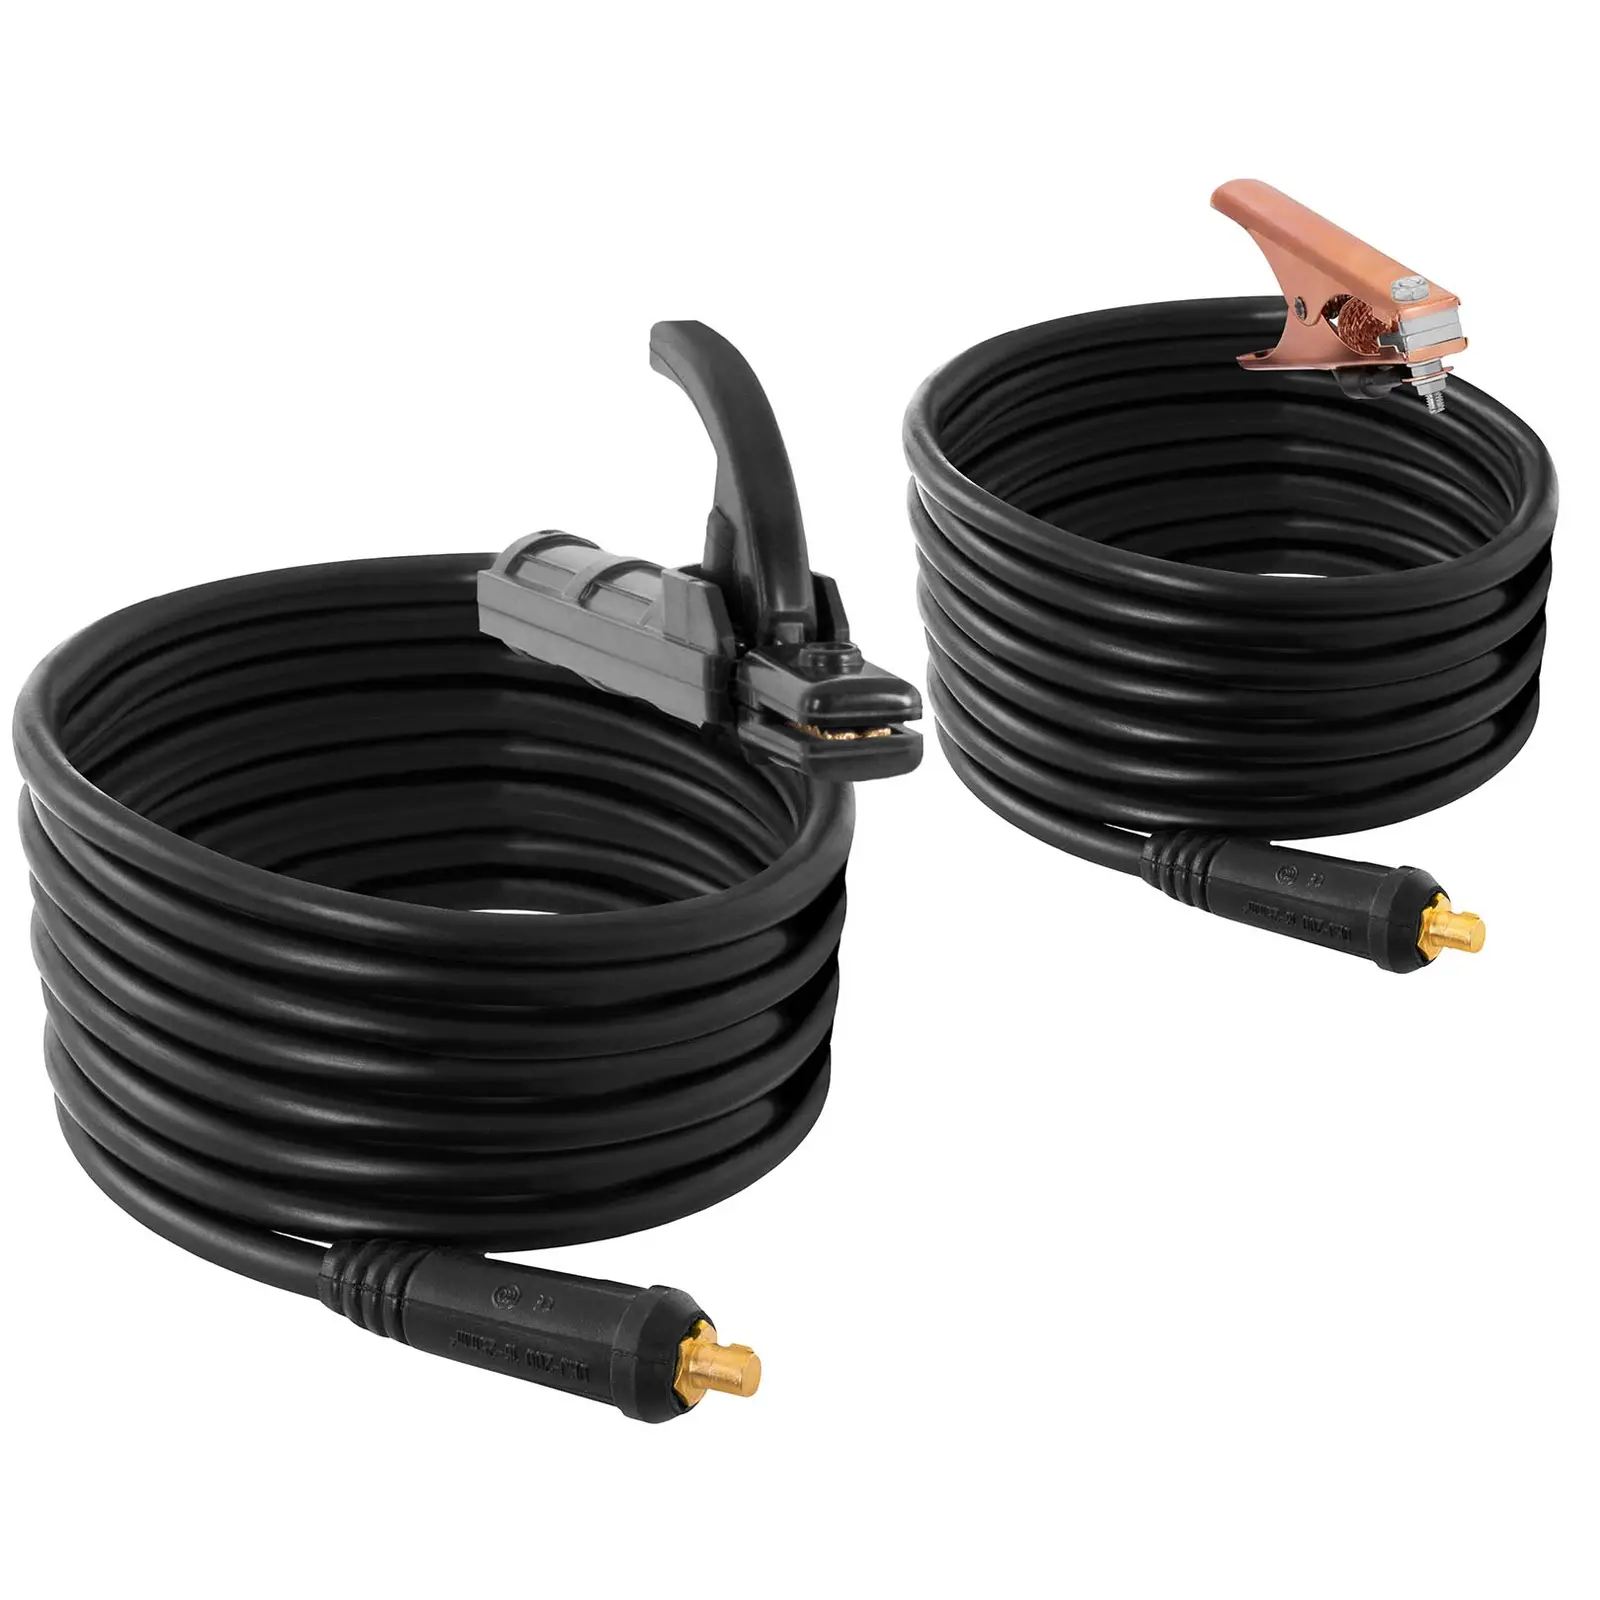 Svařovací sada Svářečka elektrod - 250 A - 8 m kabel - 60 % pracovní cyklus - svařovací přilba Colour Glass Y-100 - elektrody E7018 - základní - Ø 2,5 x 350 mm - 5 kg